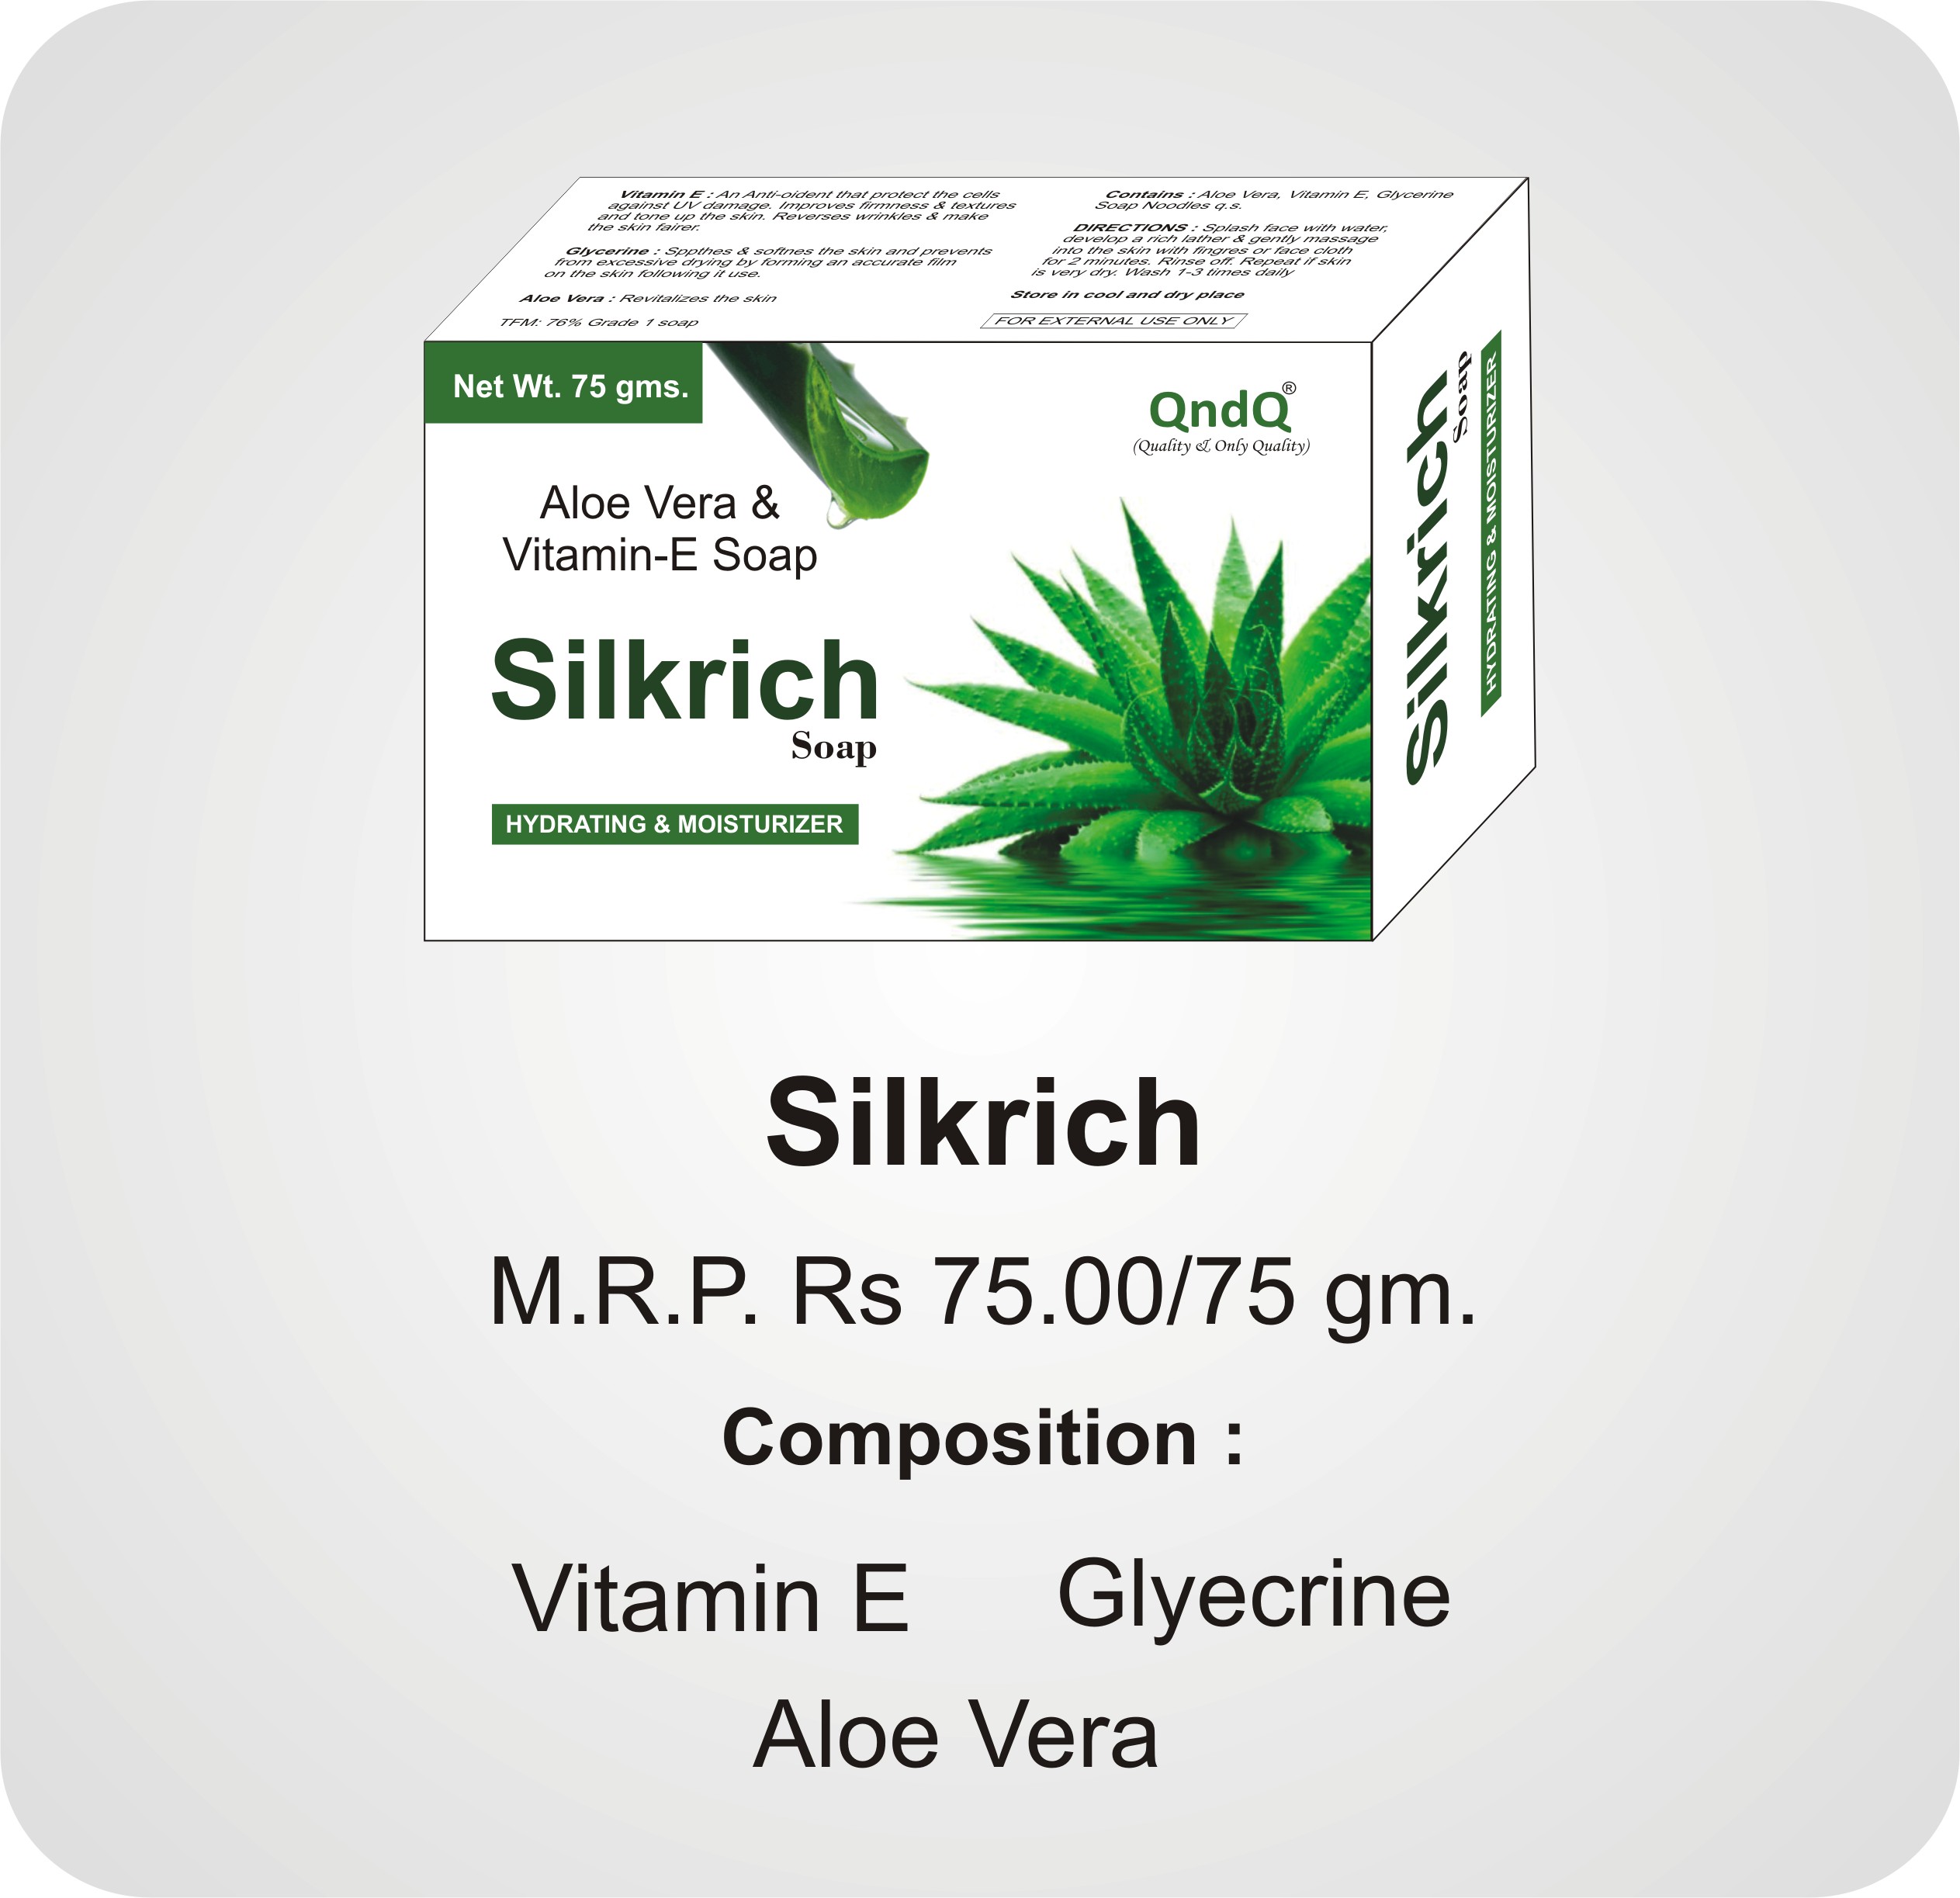 Silkrich